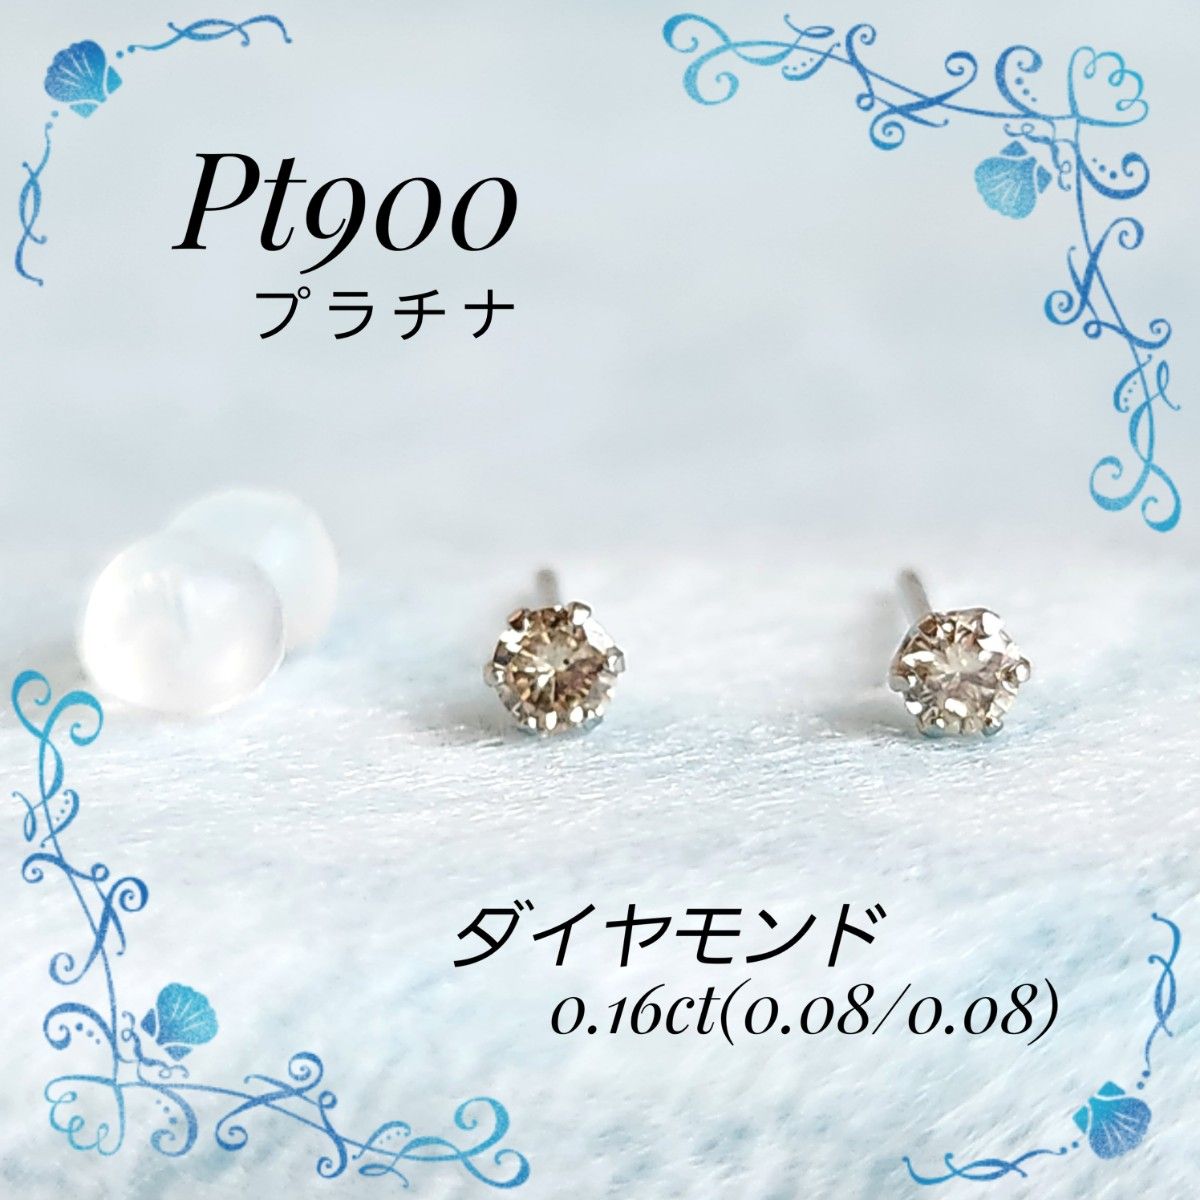 PT900 プラチナ☆ダイヤモンド 一粒ダイヤ スタッド ピアス 両耳用-